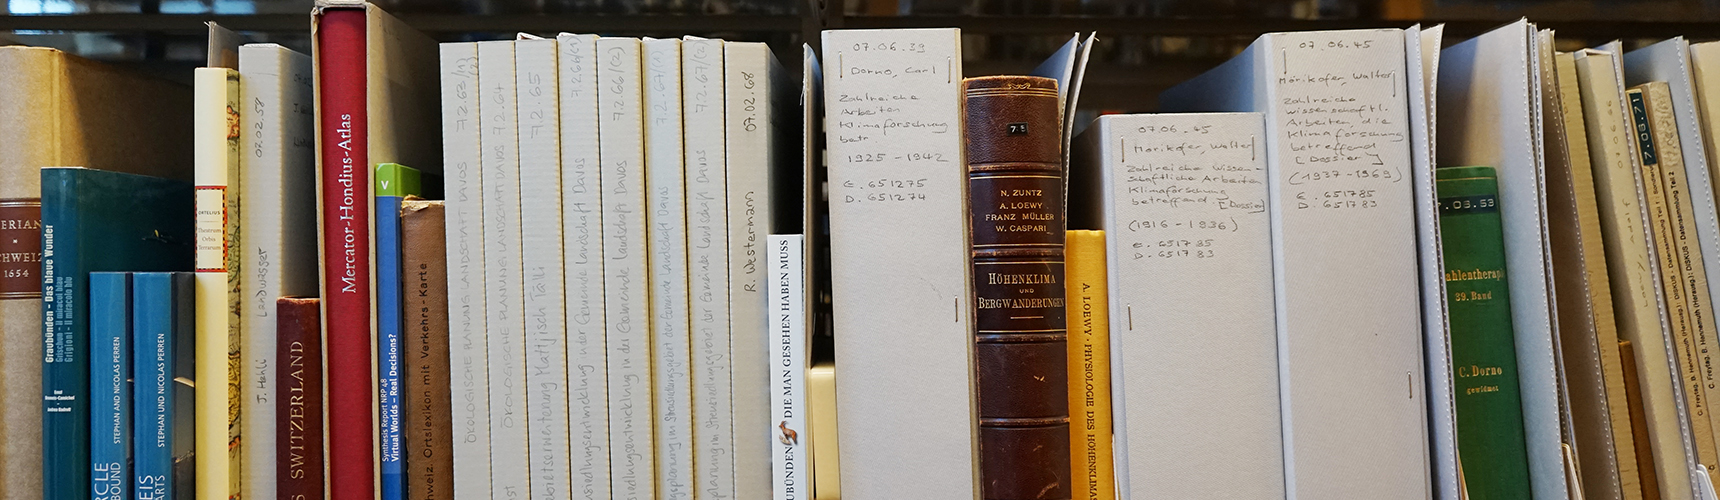 Bücher in der Dokumentationsbibliothek